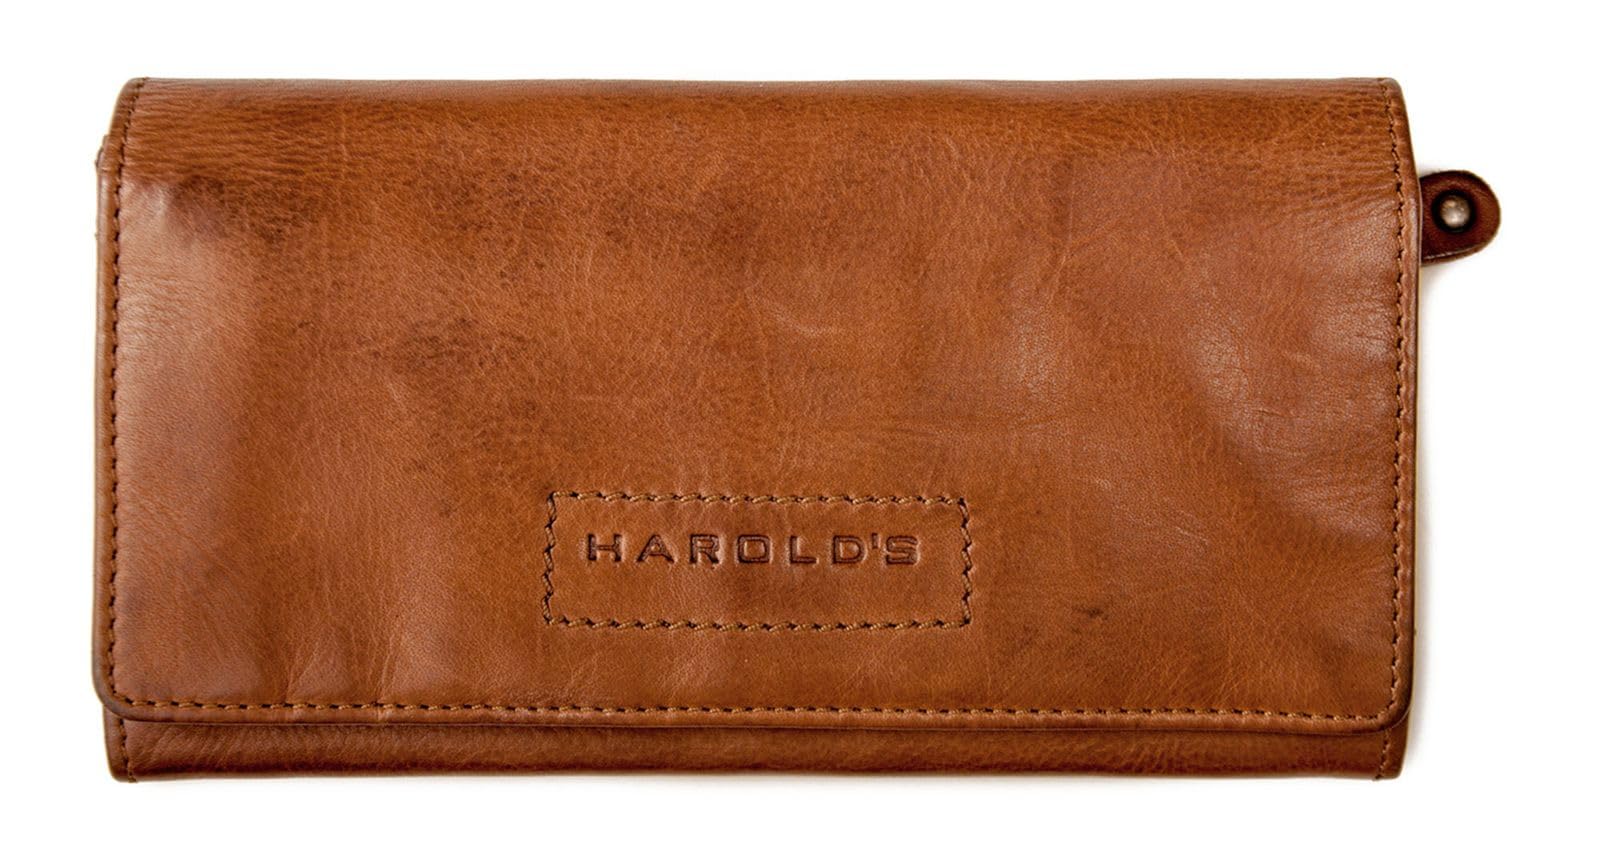 Harold's Geldbörse Leder 19 cm